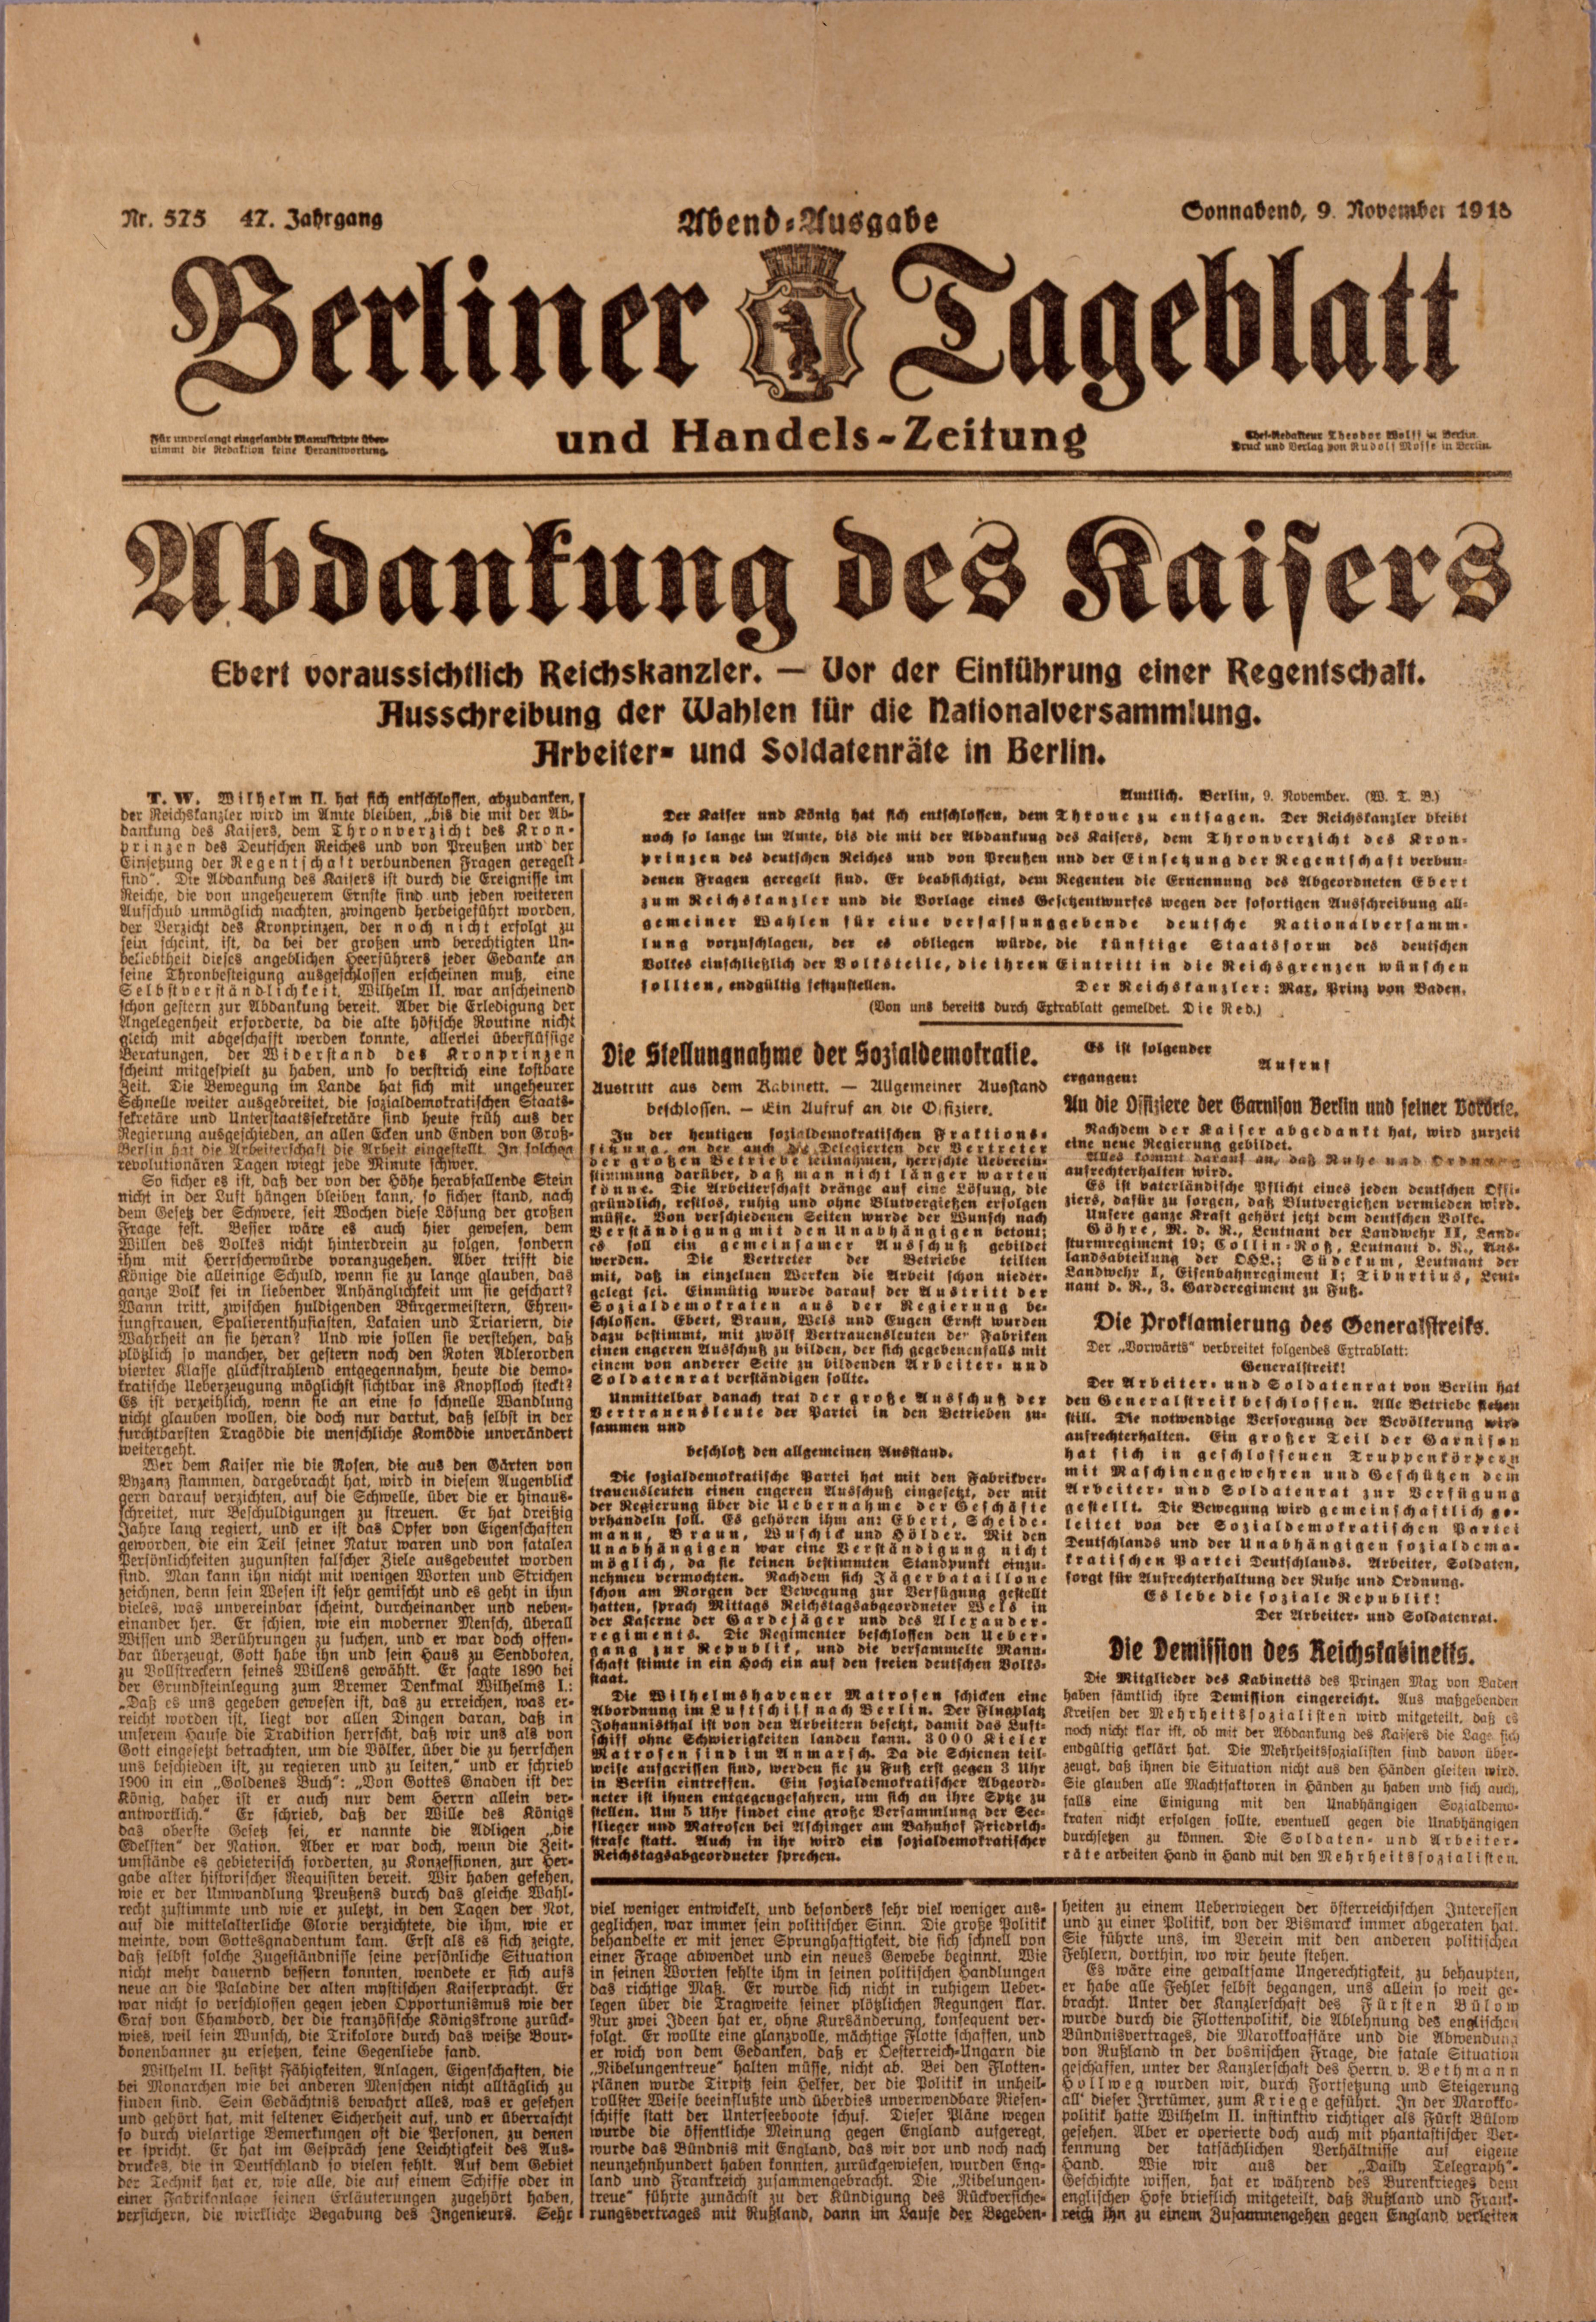 Zeitung: "Berliner Tageblatt" zur Abdankung von Kaiser Wilhelm II.